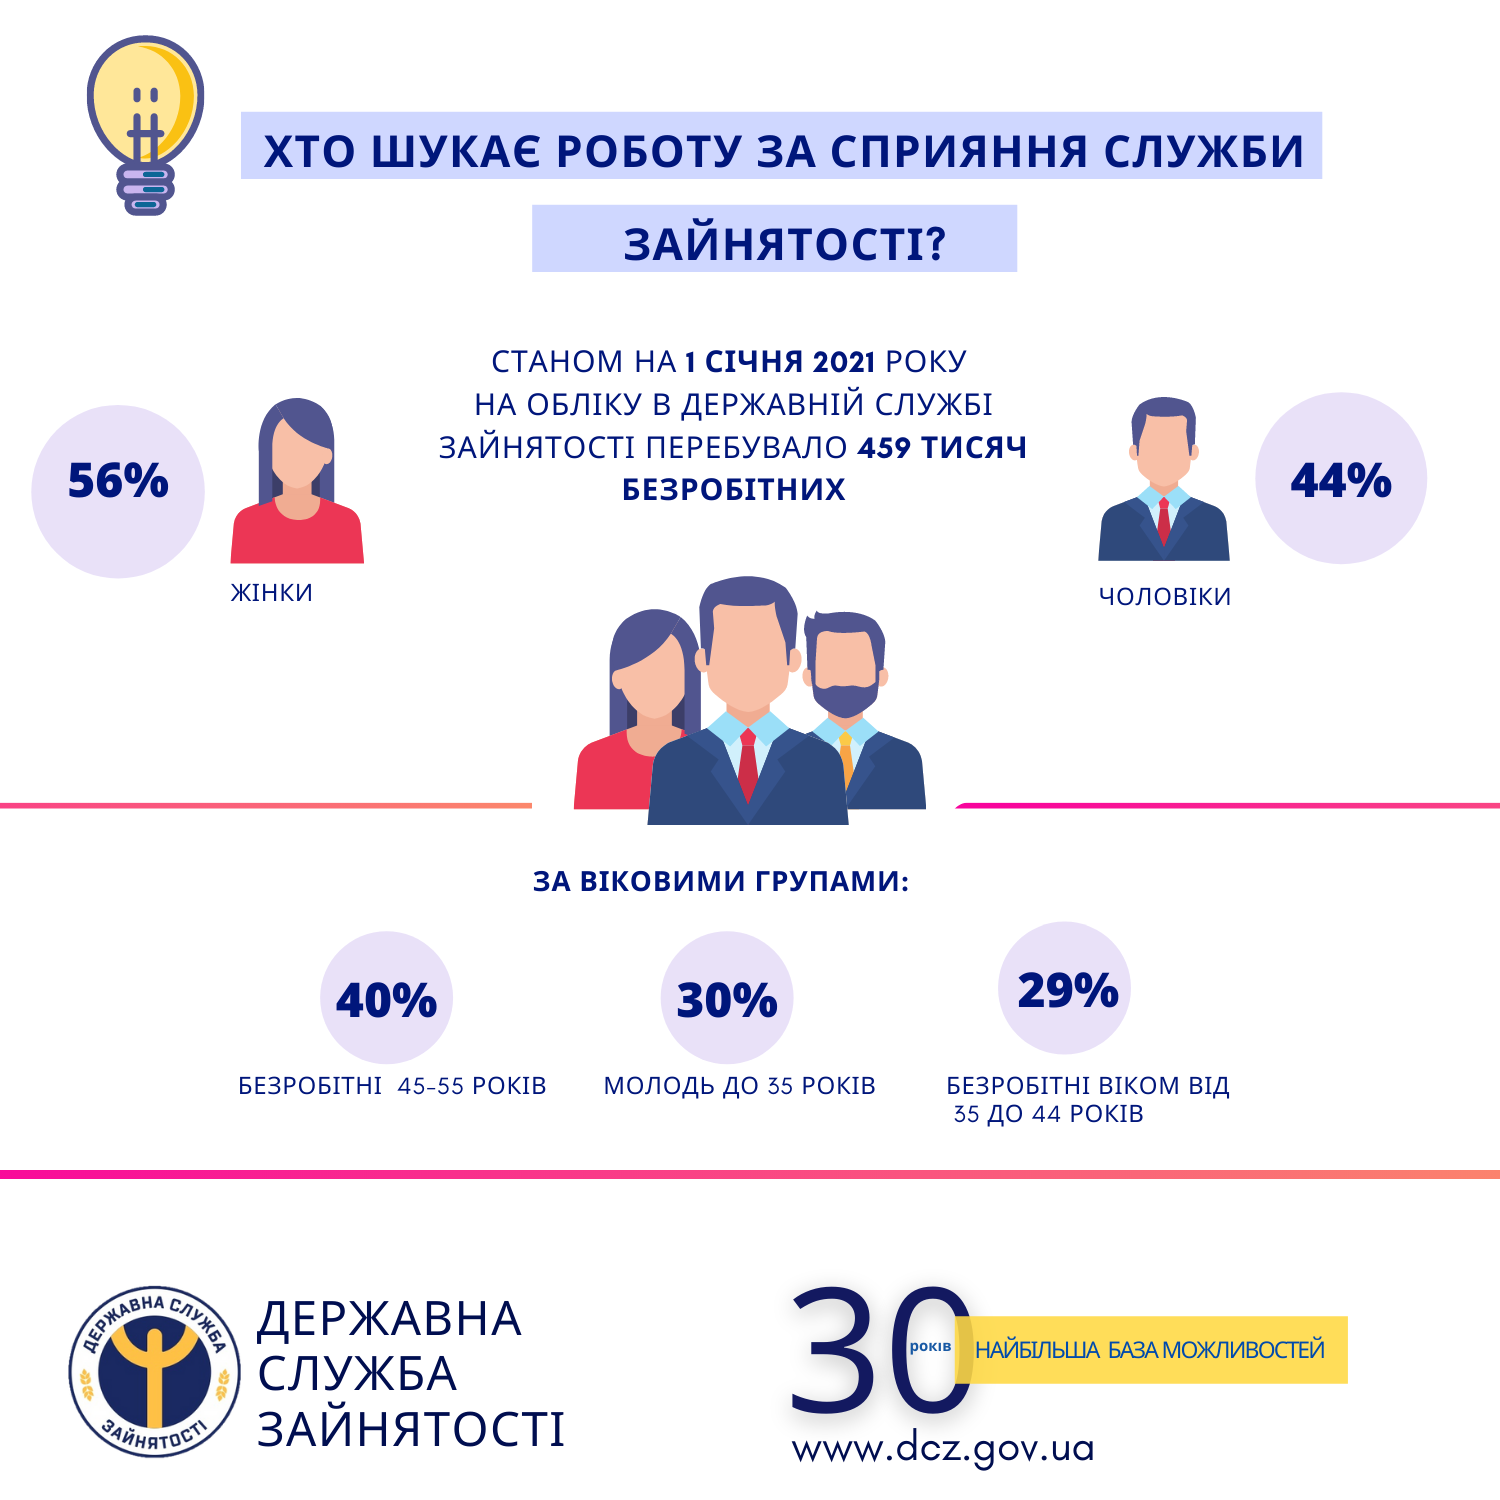 В Украине почти 460 тысяч безработных. Большинство из них женщины и люди с высшим образованием. Инфографика: Госслужба занятости